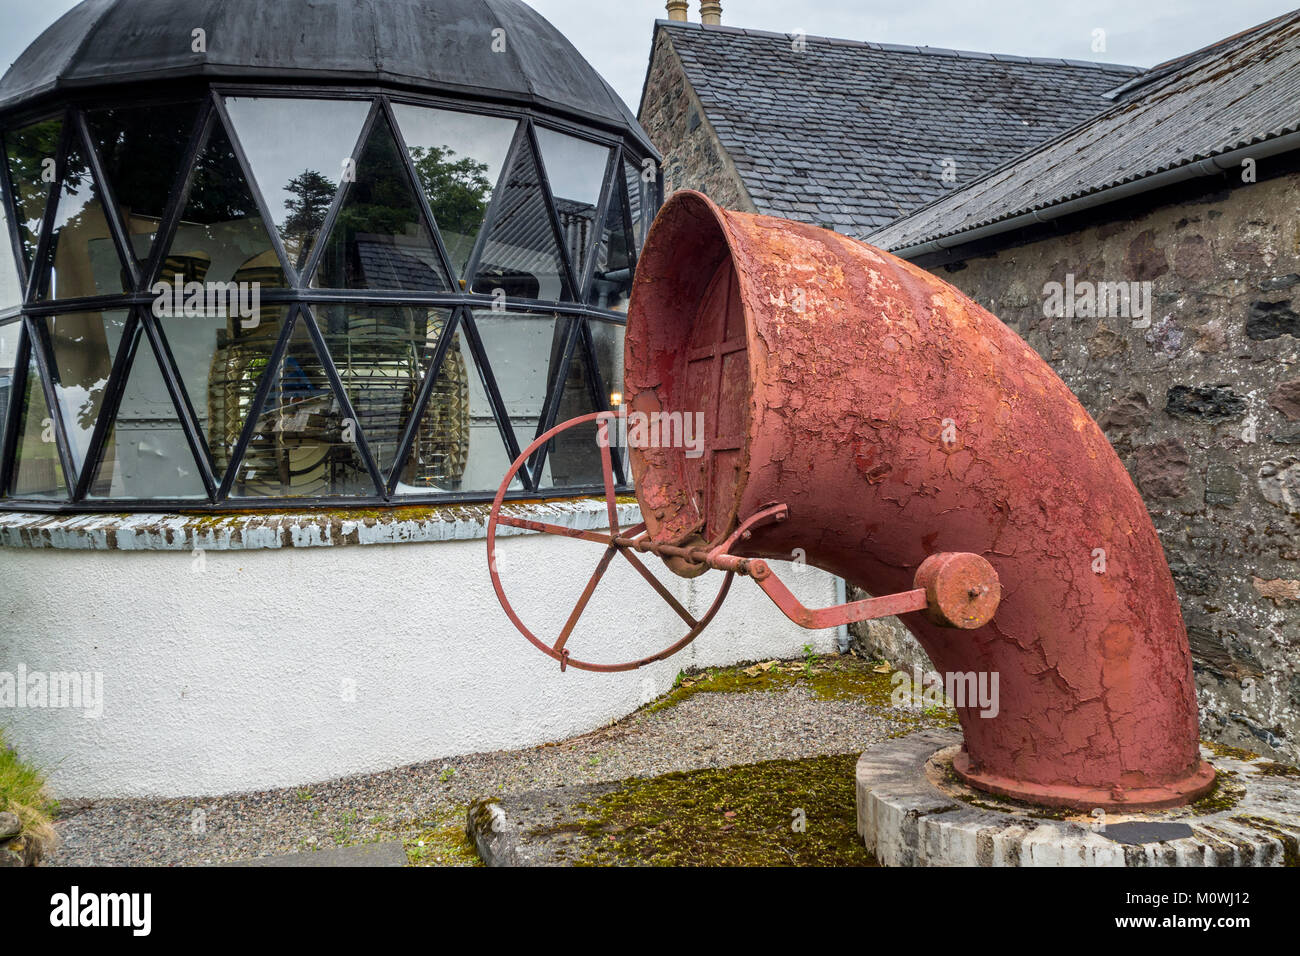 Lanterne Rouge et phare de brume à l'Gairloch Heritage Museum, Wester Ross, Nord-Ouest Scottish Highlands, Ecosse, Royaume-Uni Banque D'Images